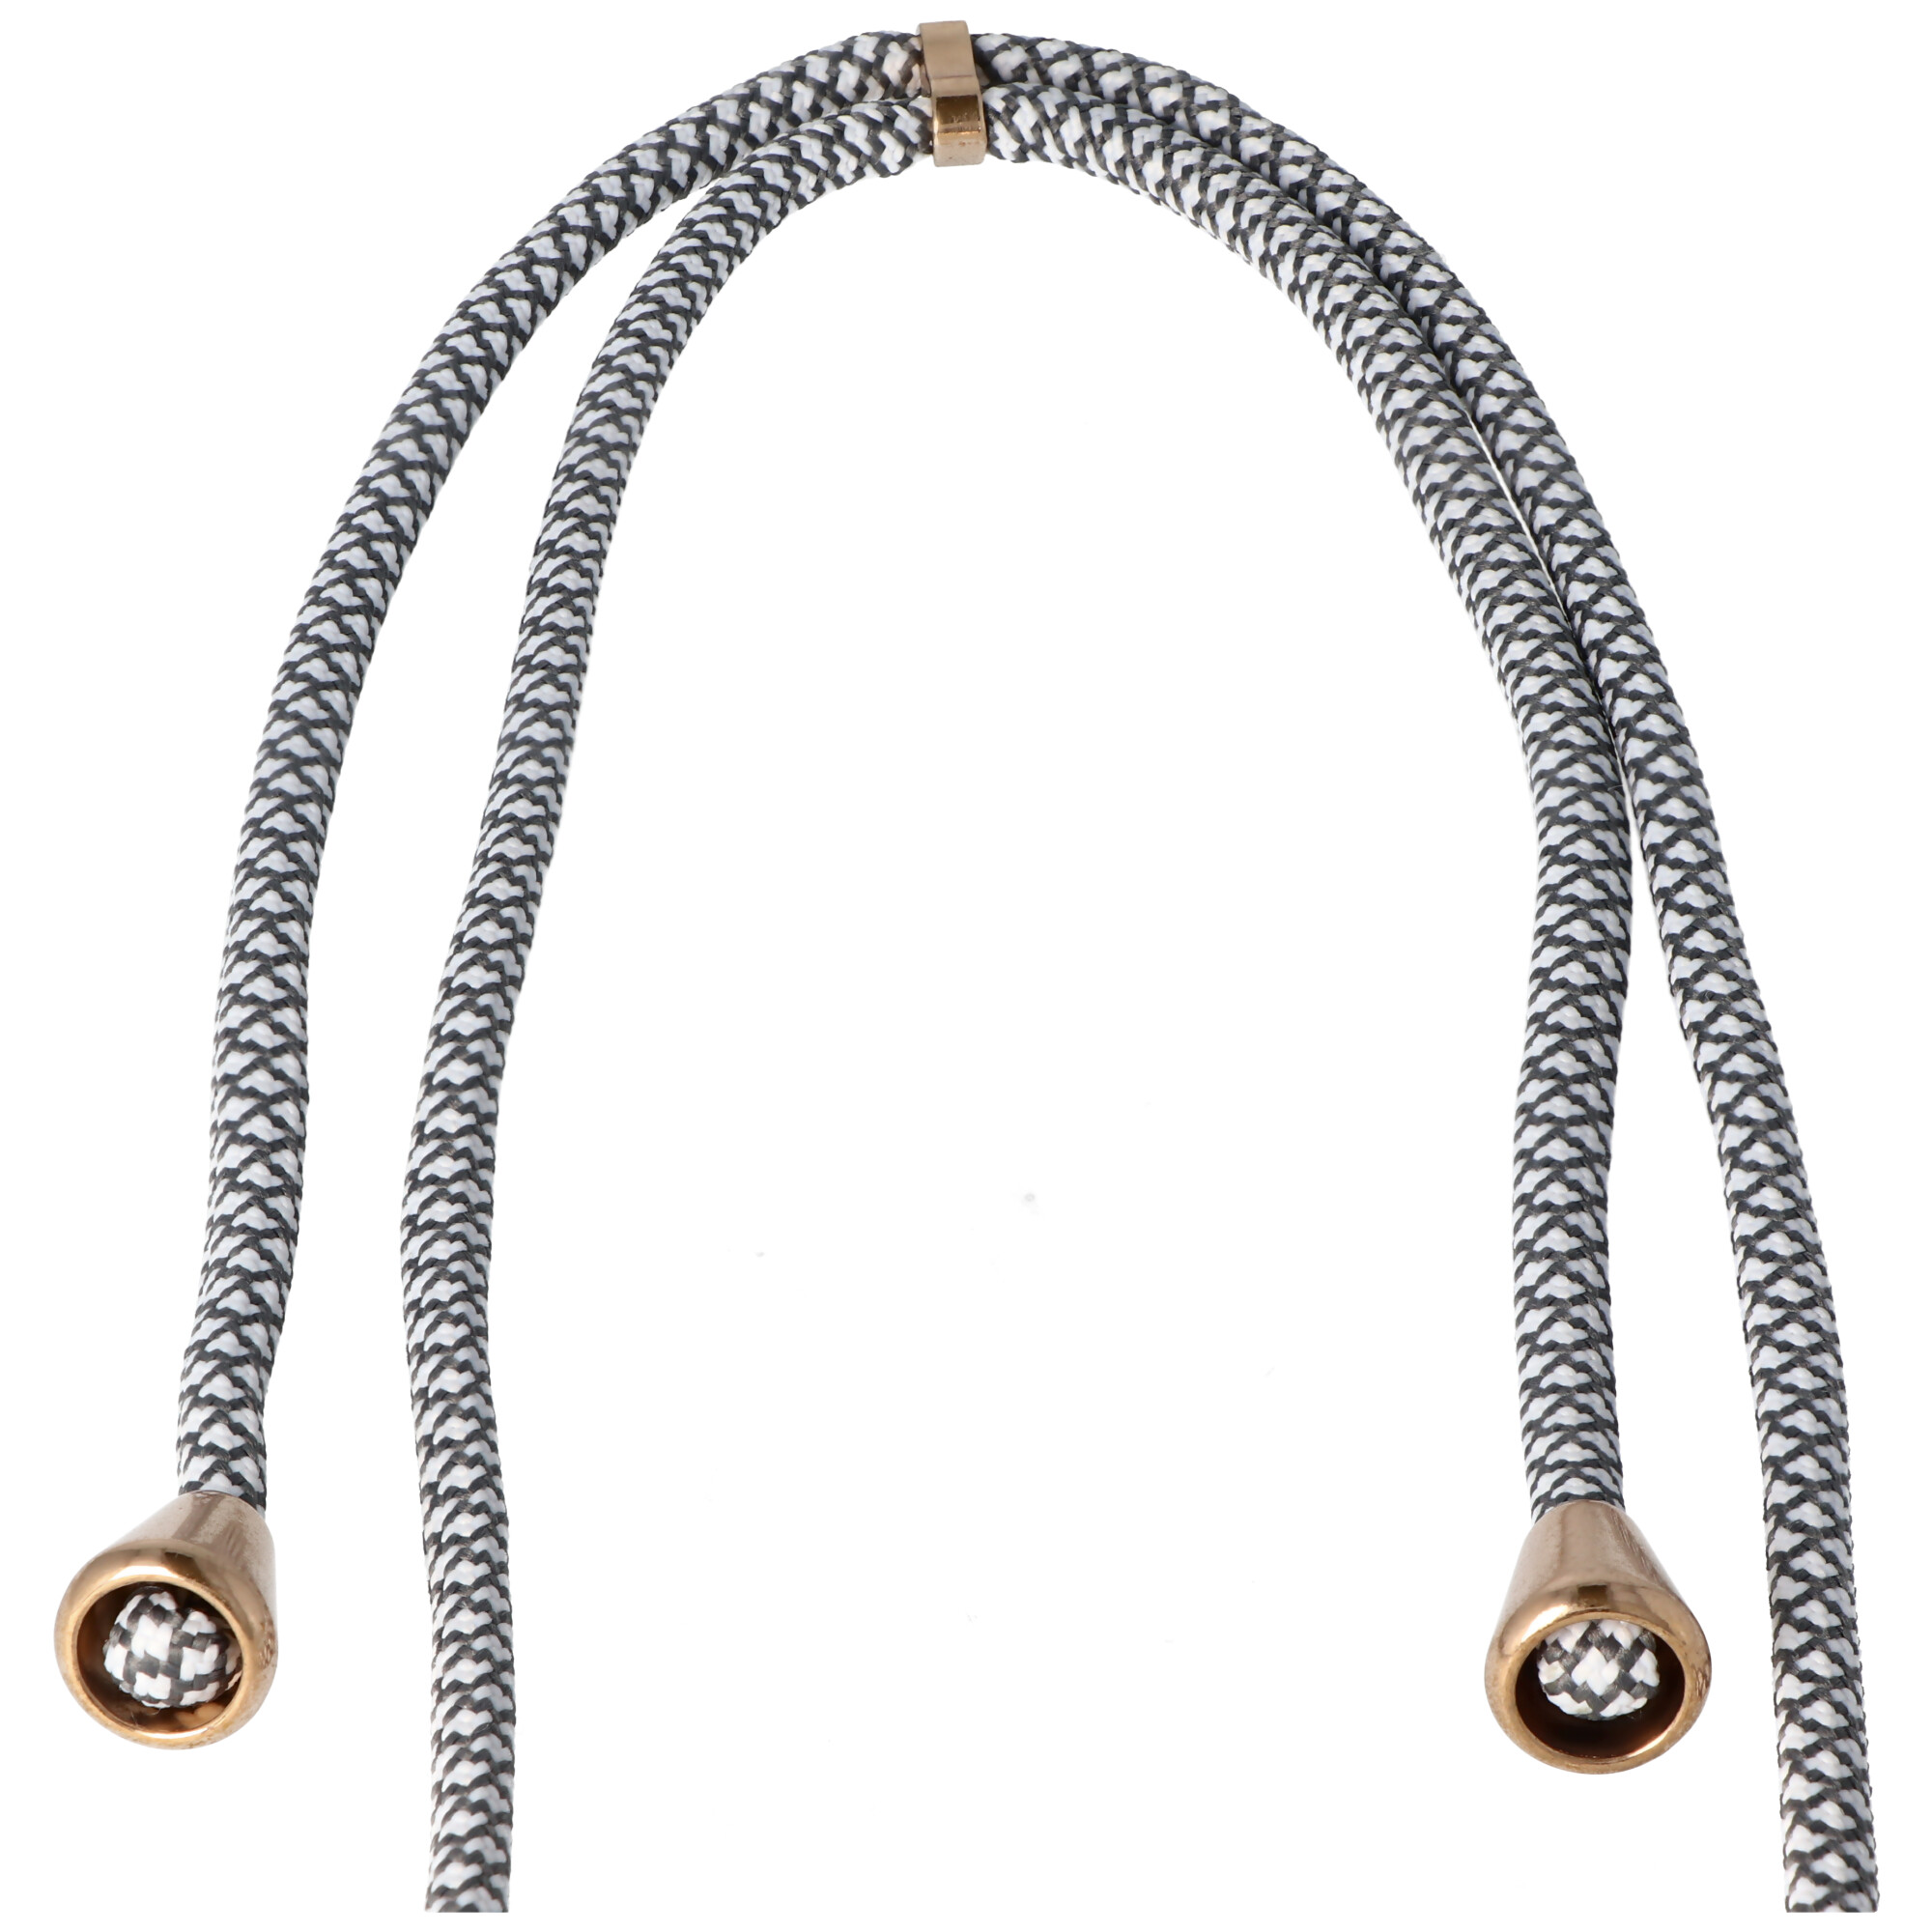 Necklace Case passend für Apple iPhone XR, Smartphonehülle mit Kordel grau,weiß zum Umhängen